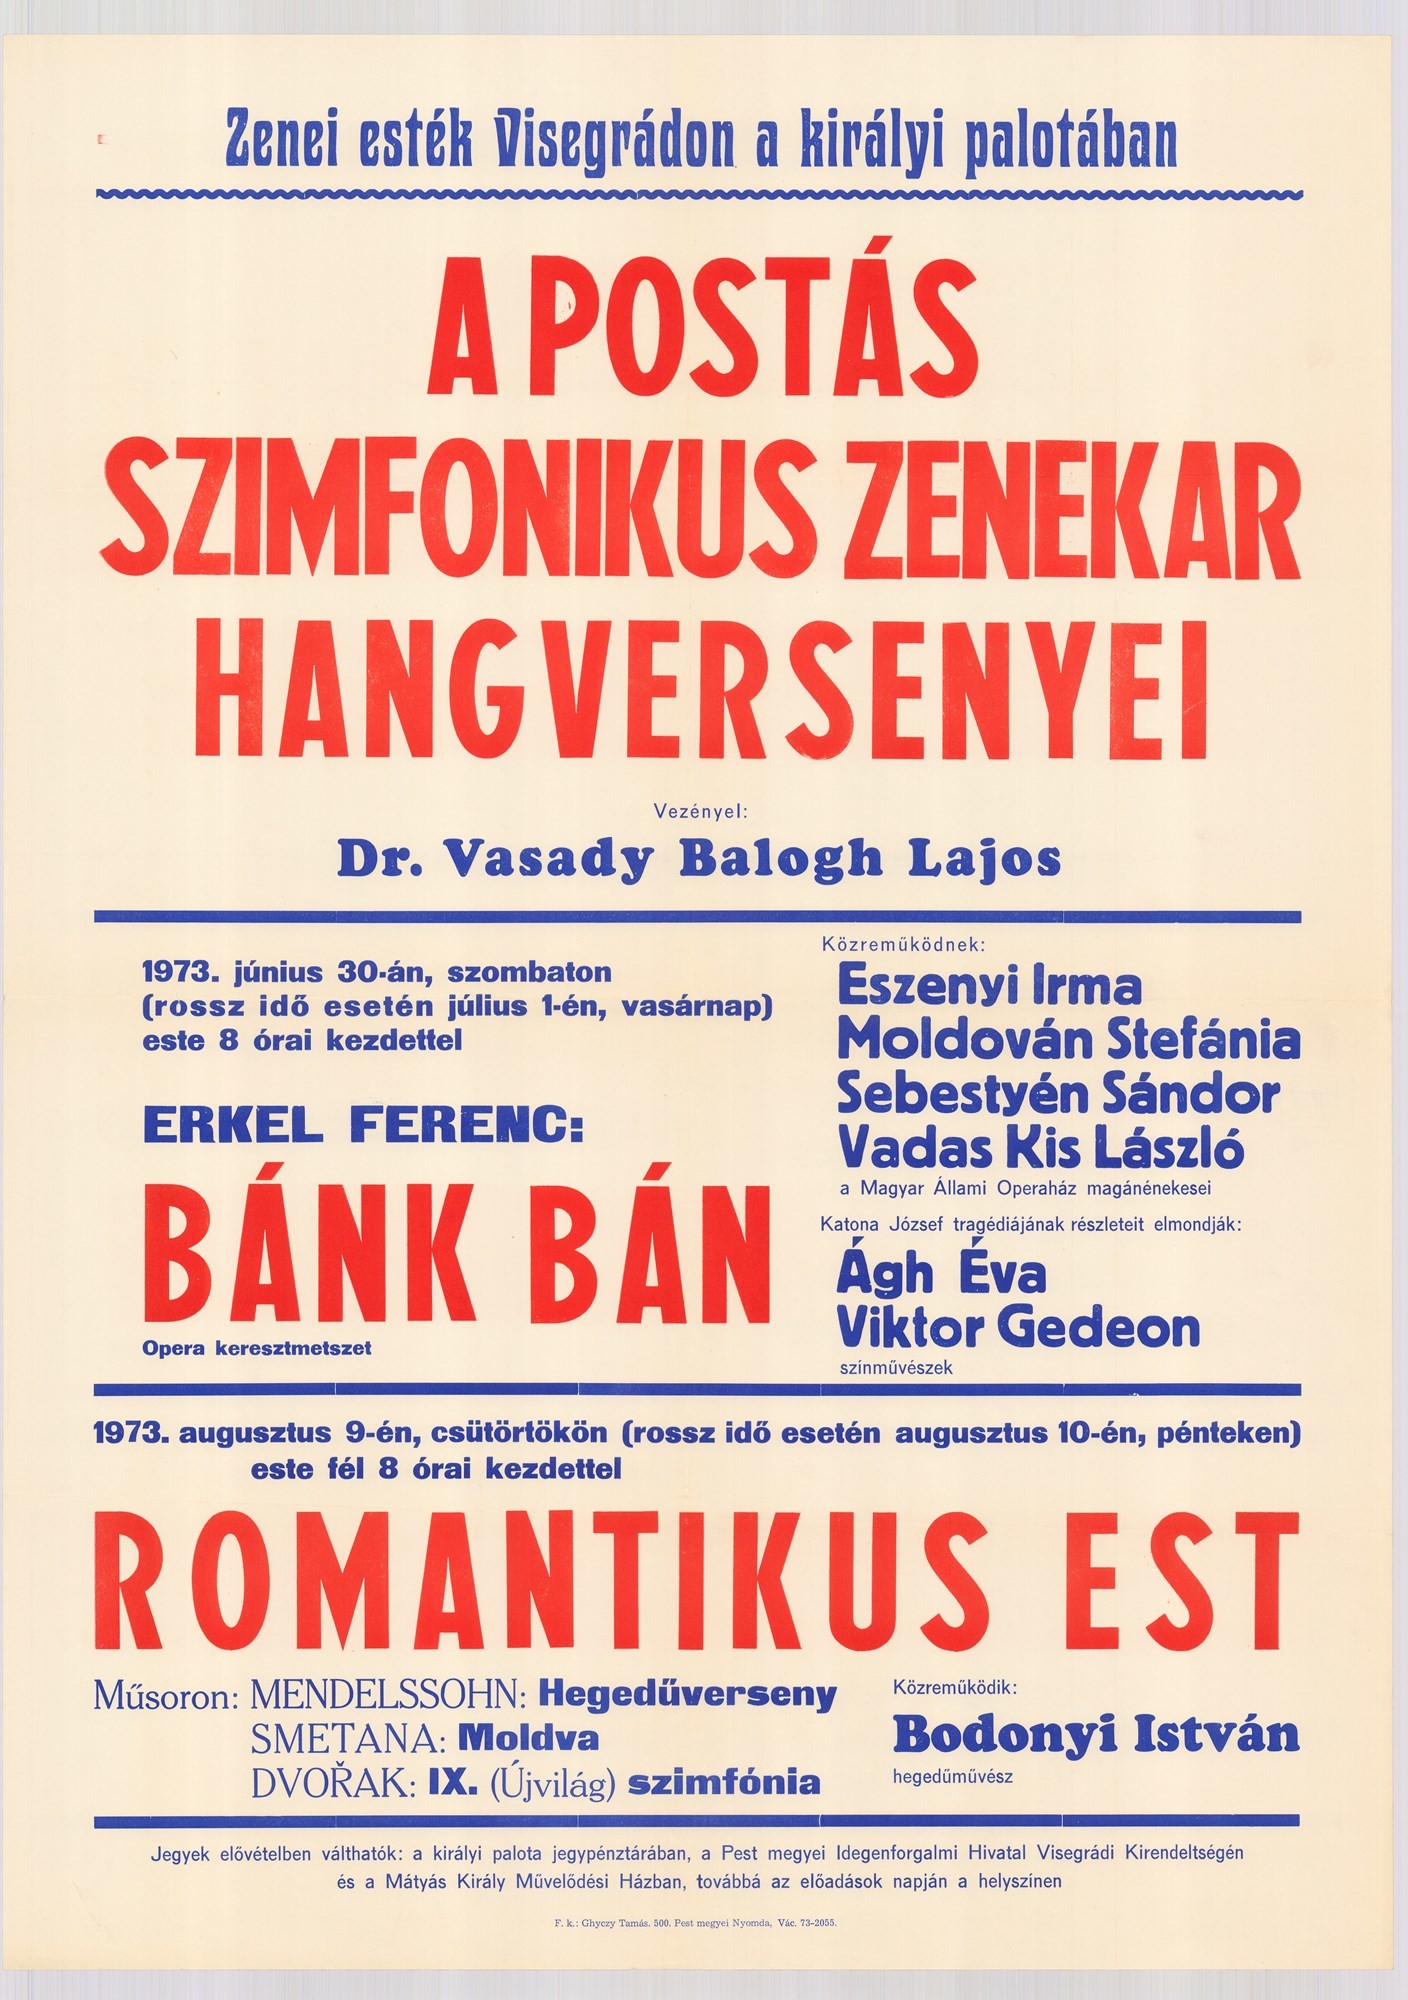 Plakát - Postás Szonfoniksu Zenekar hangversenye, Visegrád, 1973 (Postamúzeum CC BY-NC-SA)